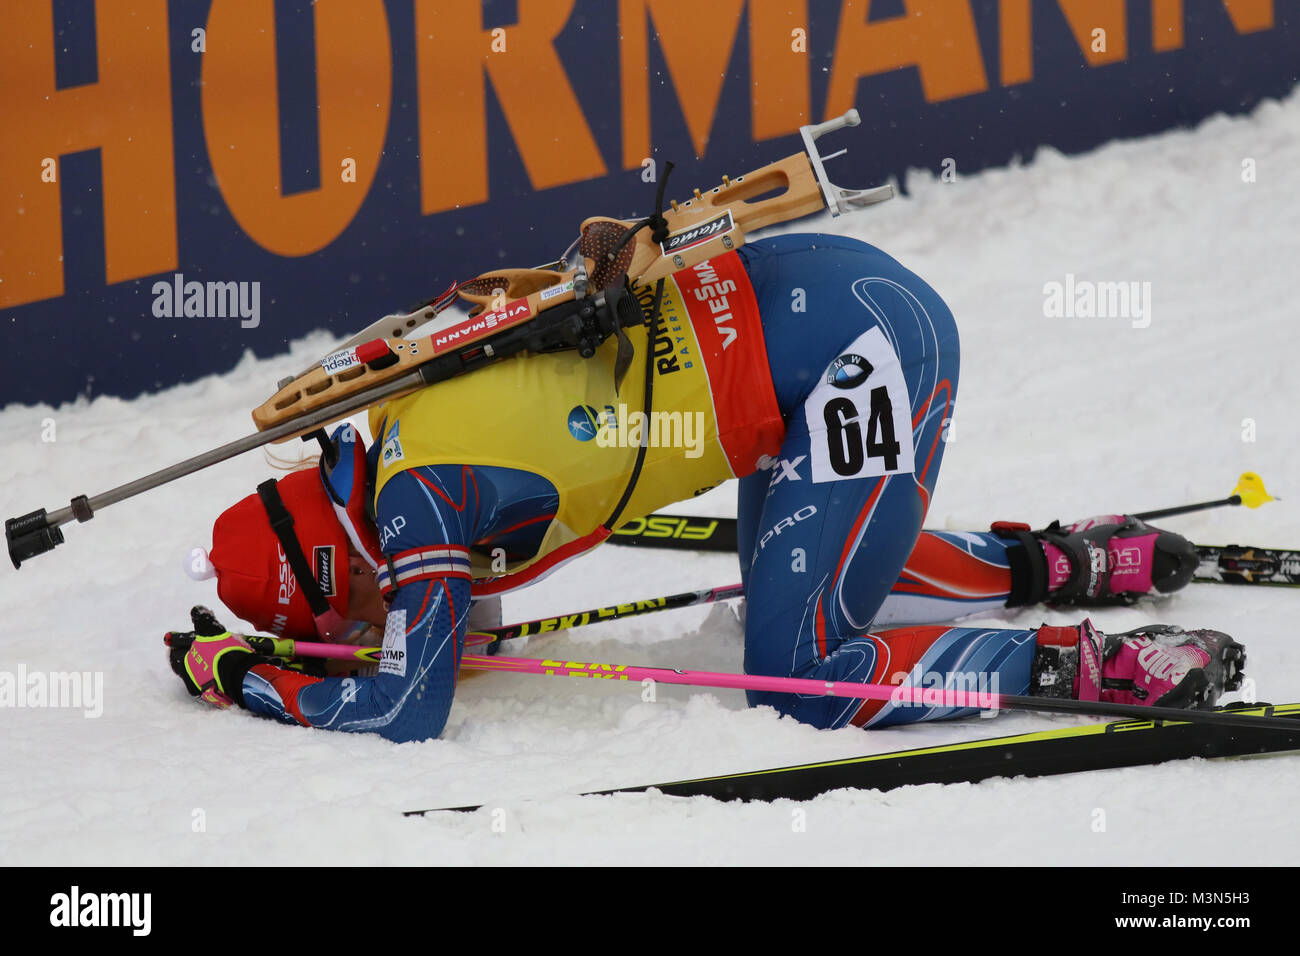 Gekämpft bis zum Umfallen und Platz zwei: Gabriela Koukalova (vormals Soukalova) liegt im Schnee - Weltcup Ruhpolding 2017 - Sprint Frauen Stock Photo